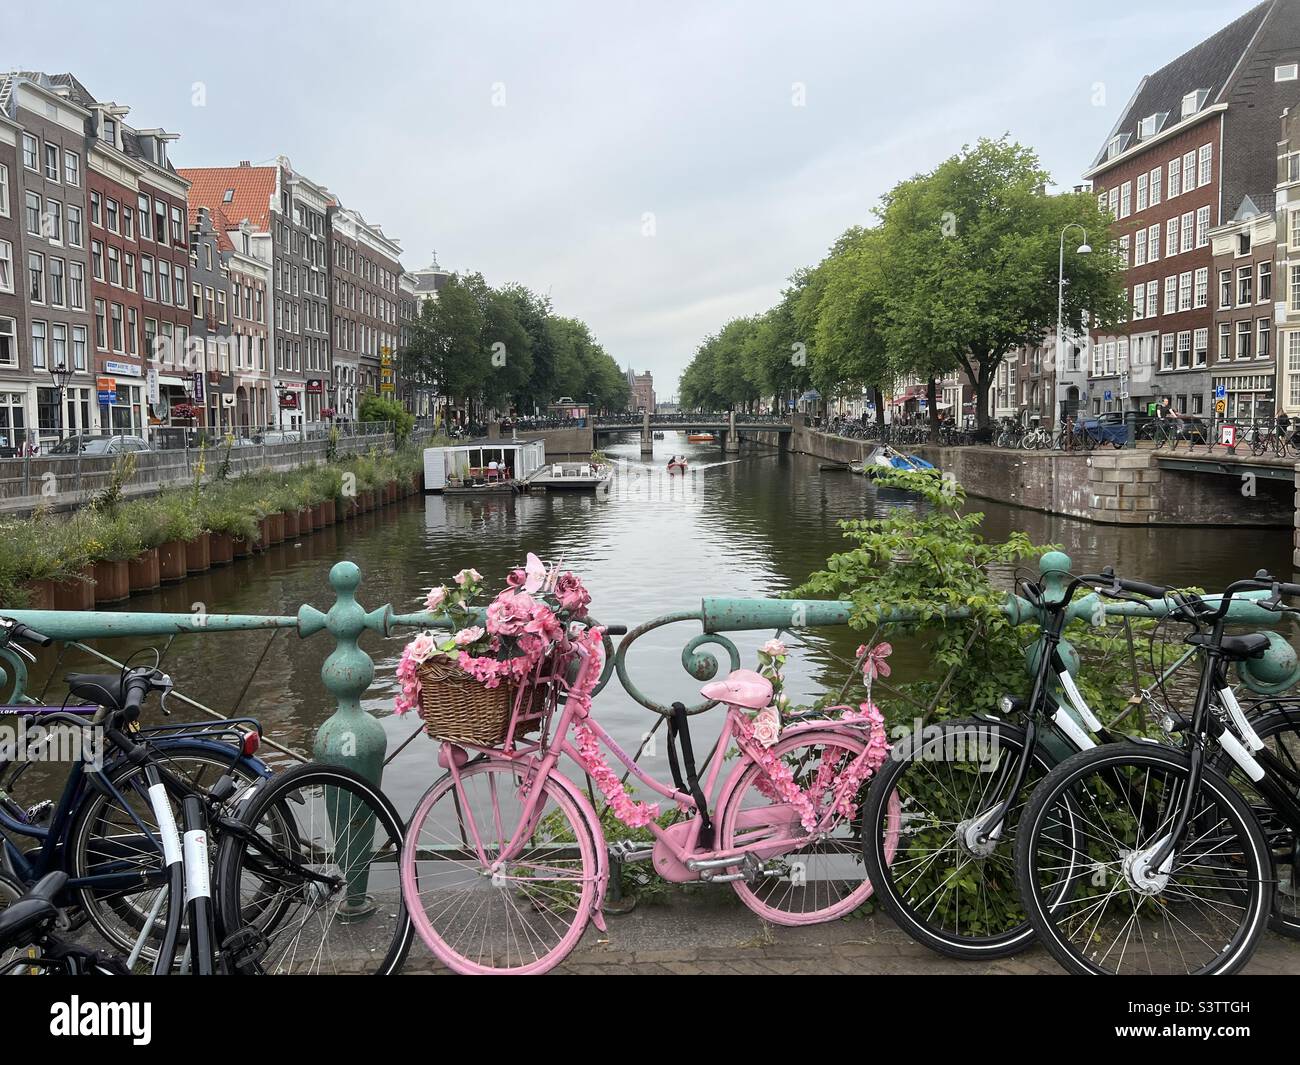 Vista de canal y bicicleta rosa en Ámsterdam, Países Bajos Foto de stock